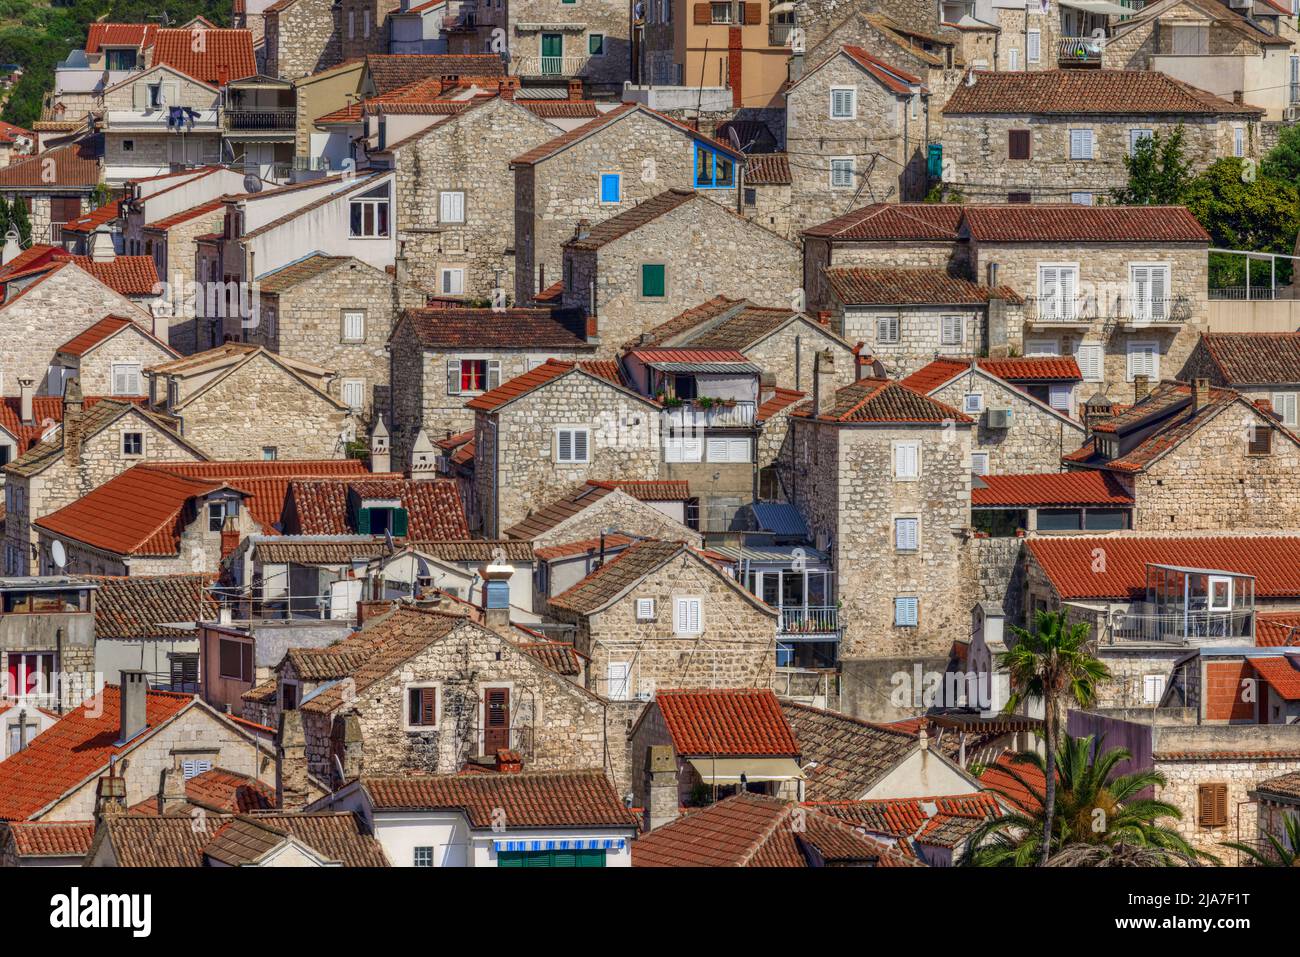 Hvar town, Dalmatia, Croatia, Europe Stock Photo